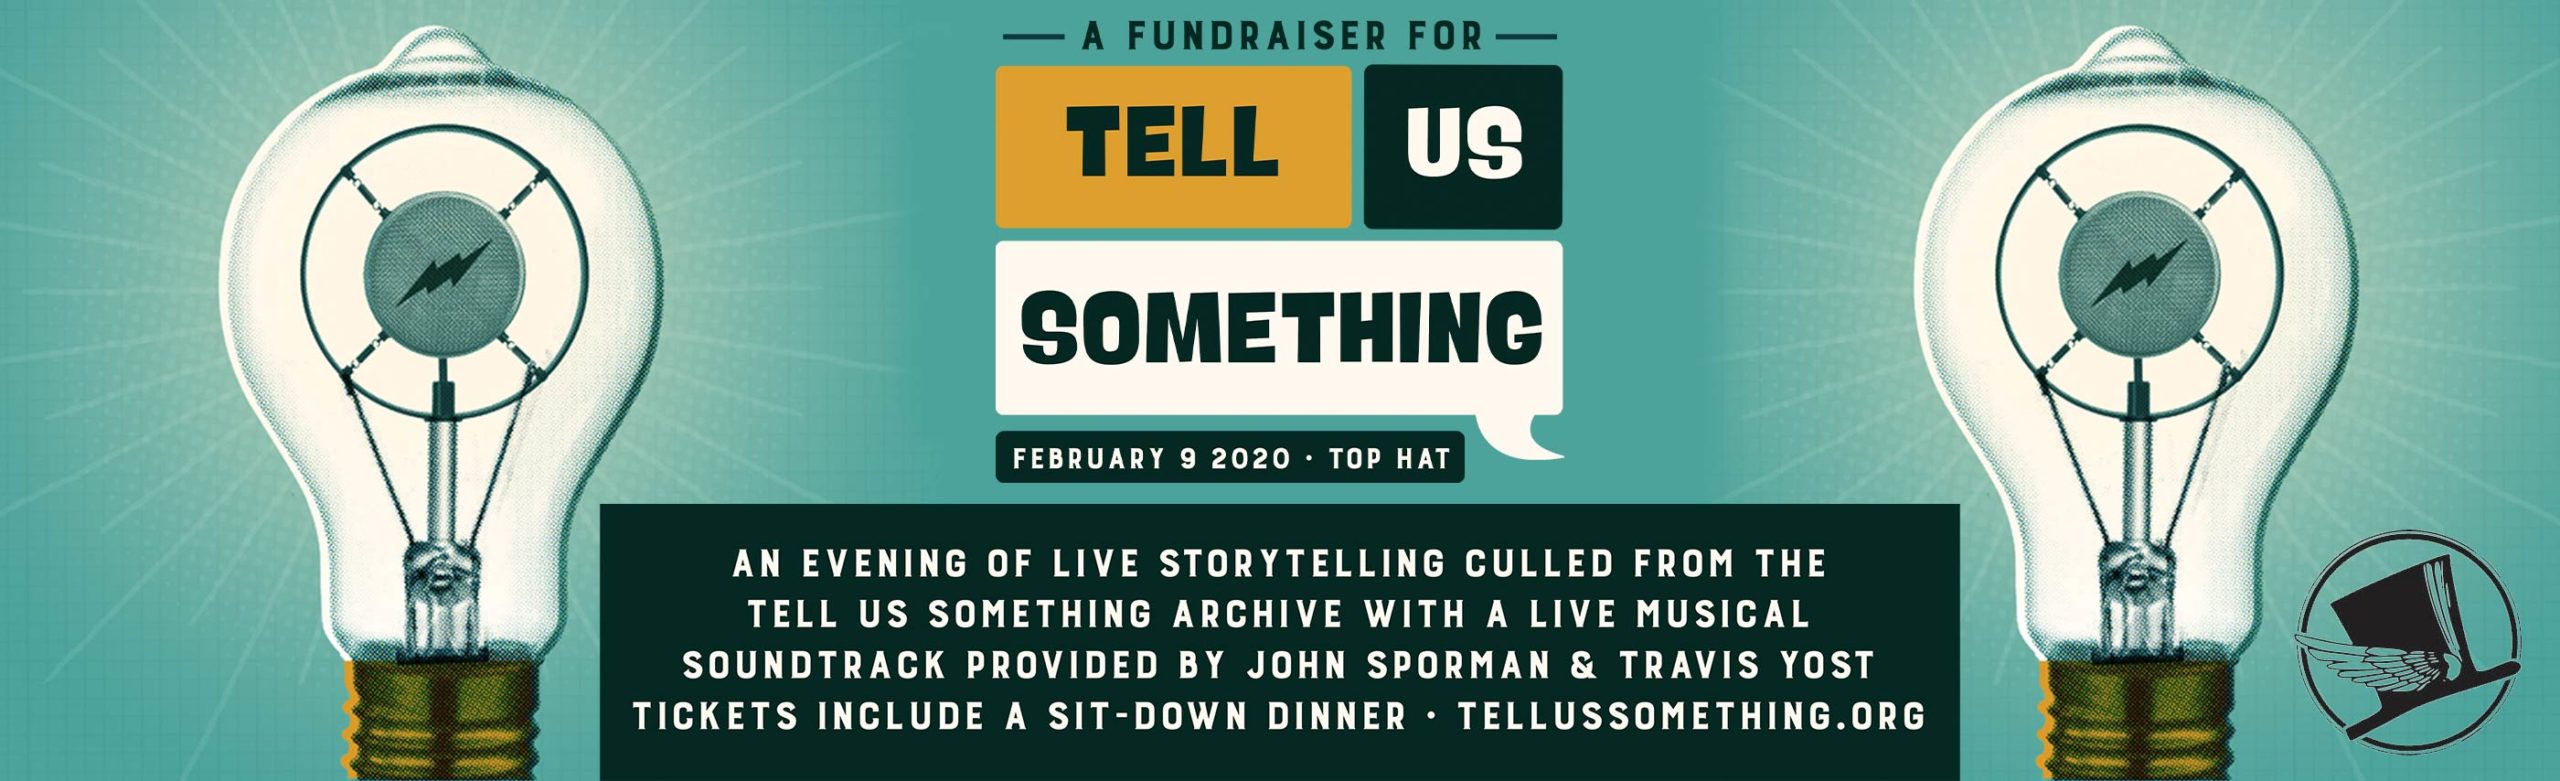 Tell Us Something Fundraiser